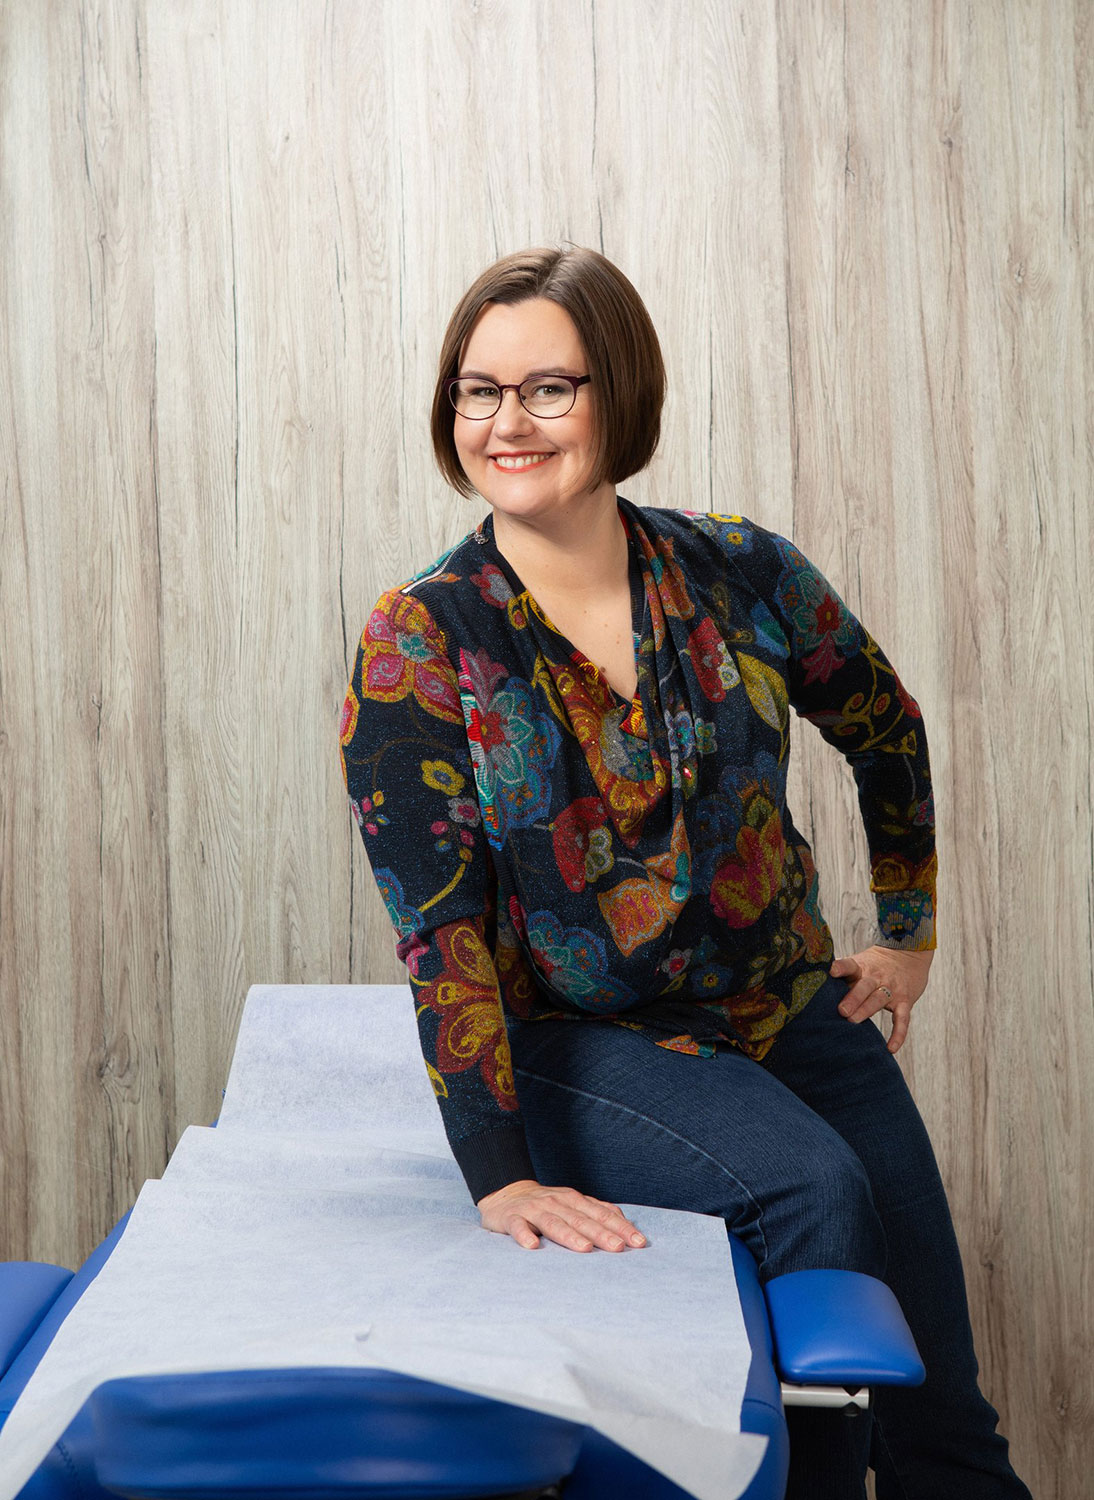 Kiinalaisen lääketieteen taitaja, hymyilevä Hanna-Leena Heikkilä istuu hoitopöydän reunalla